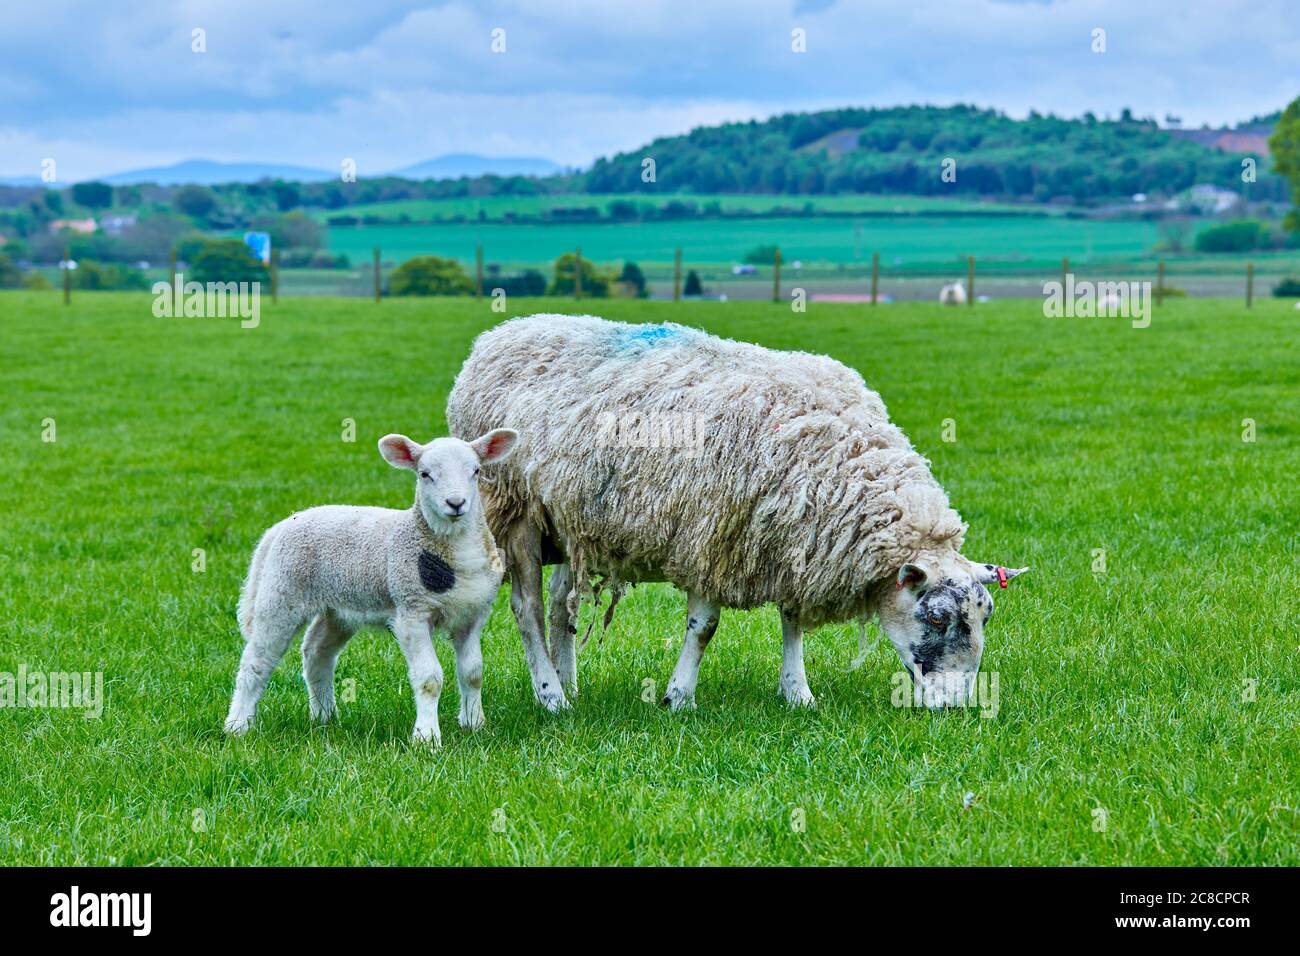 Madre oveja con cordero de primavera en campo verde Foto de stock